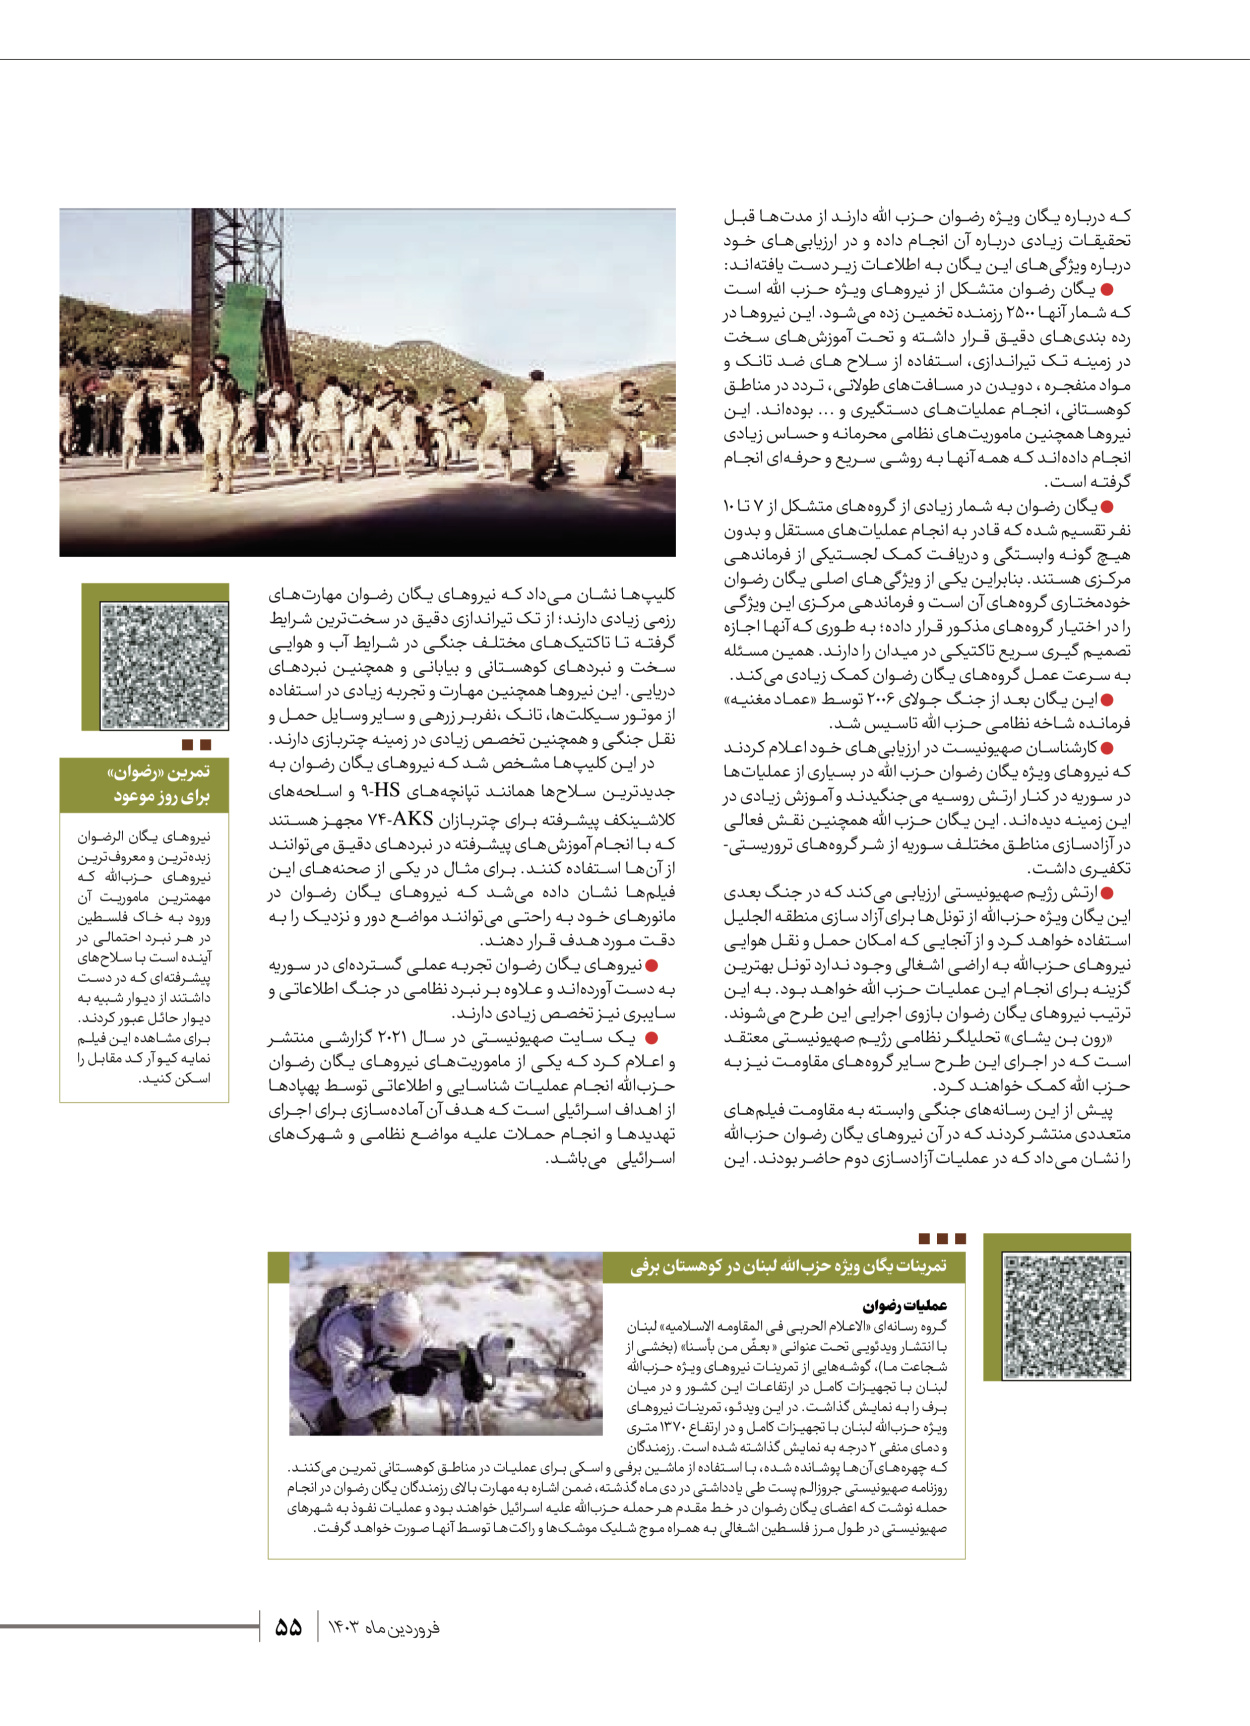 روزنامه ایران - ویژه نامه شهدای قدس ۶ - ۲۵ فروردین ۱۴۰۳ - صفحه ۵۵